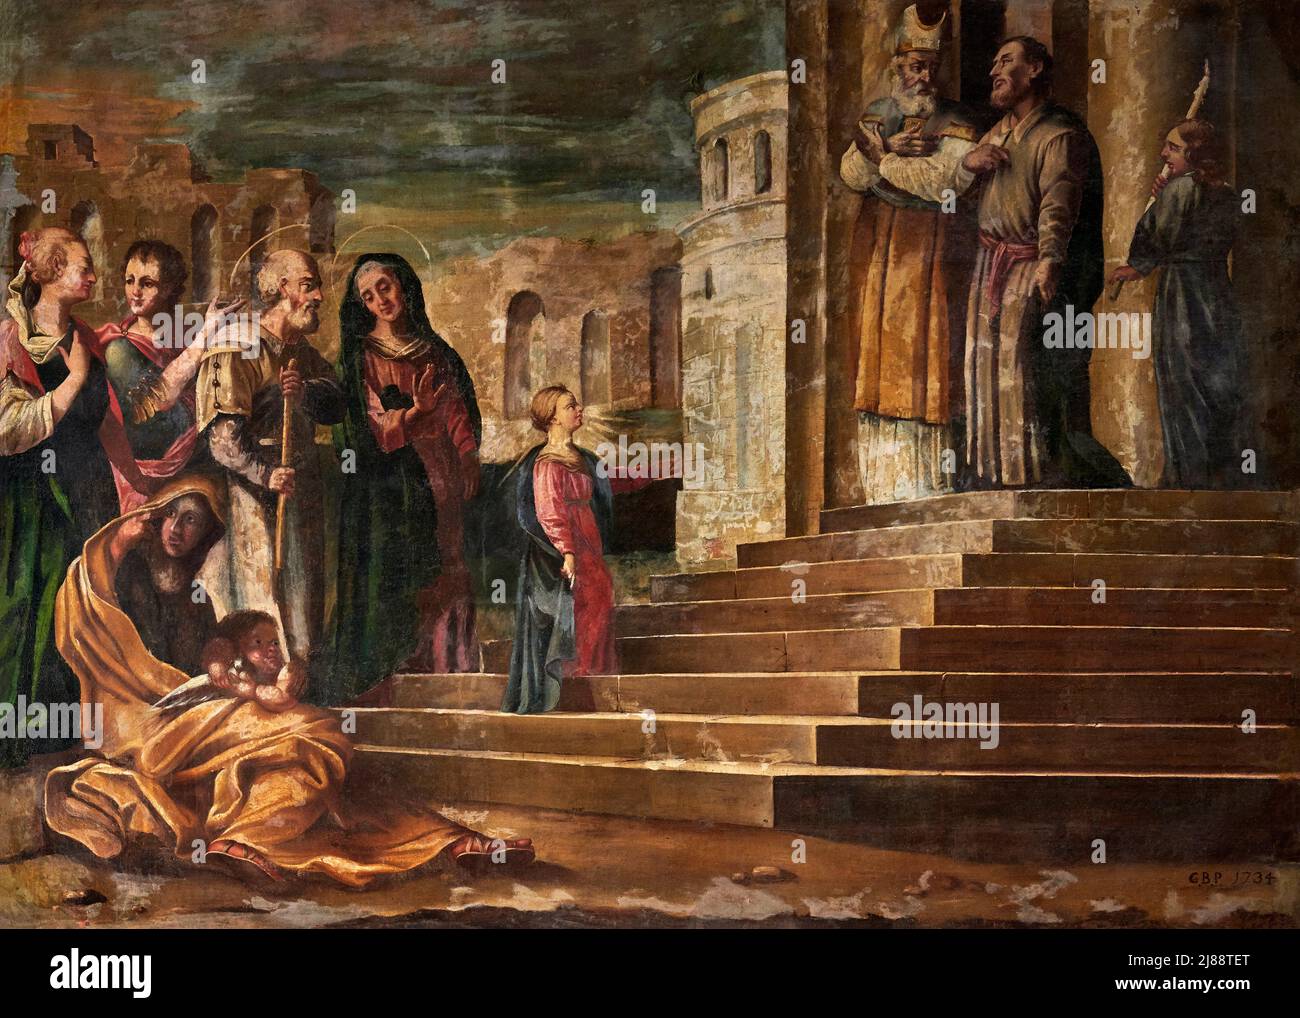 Presentazione di Maria al tempio   - olio su tela   - M.A. Bianchi - 1734  - Cassiglio (Bg),Italia, chiesa di S. Bartolomeo Stock Photo